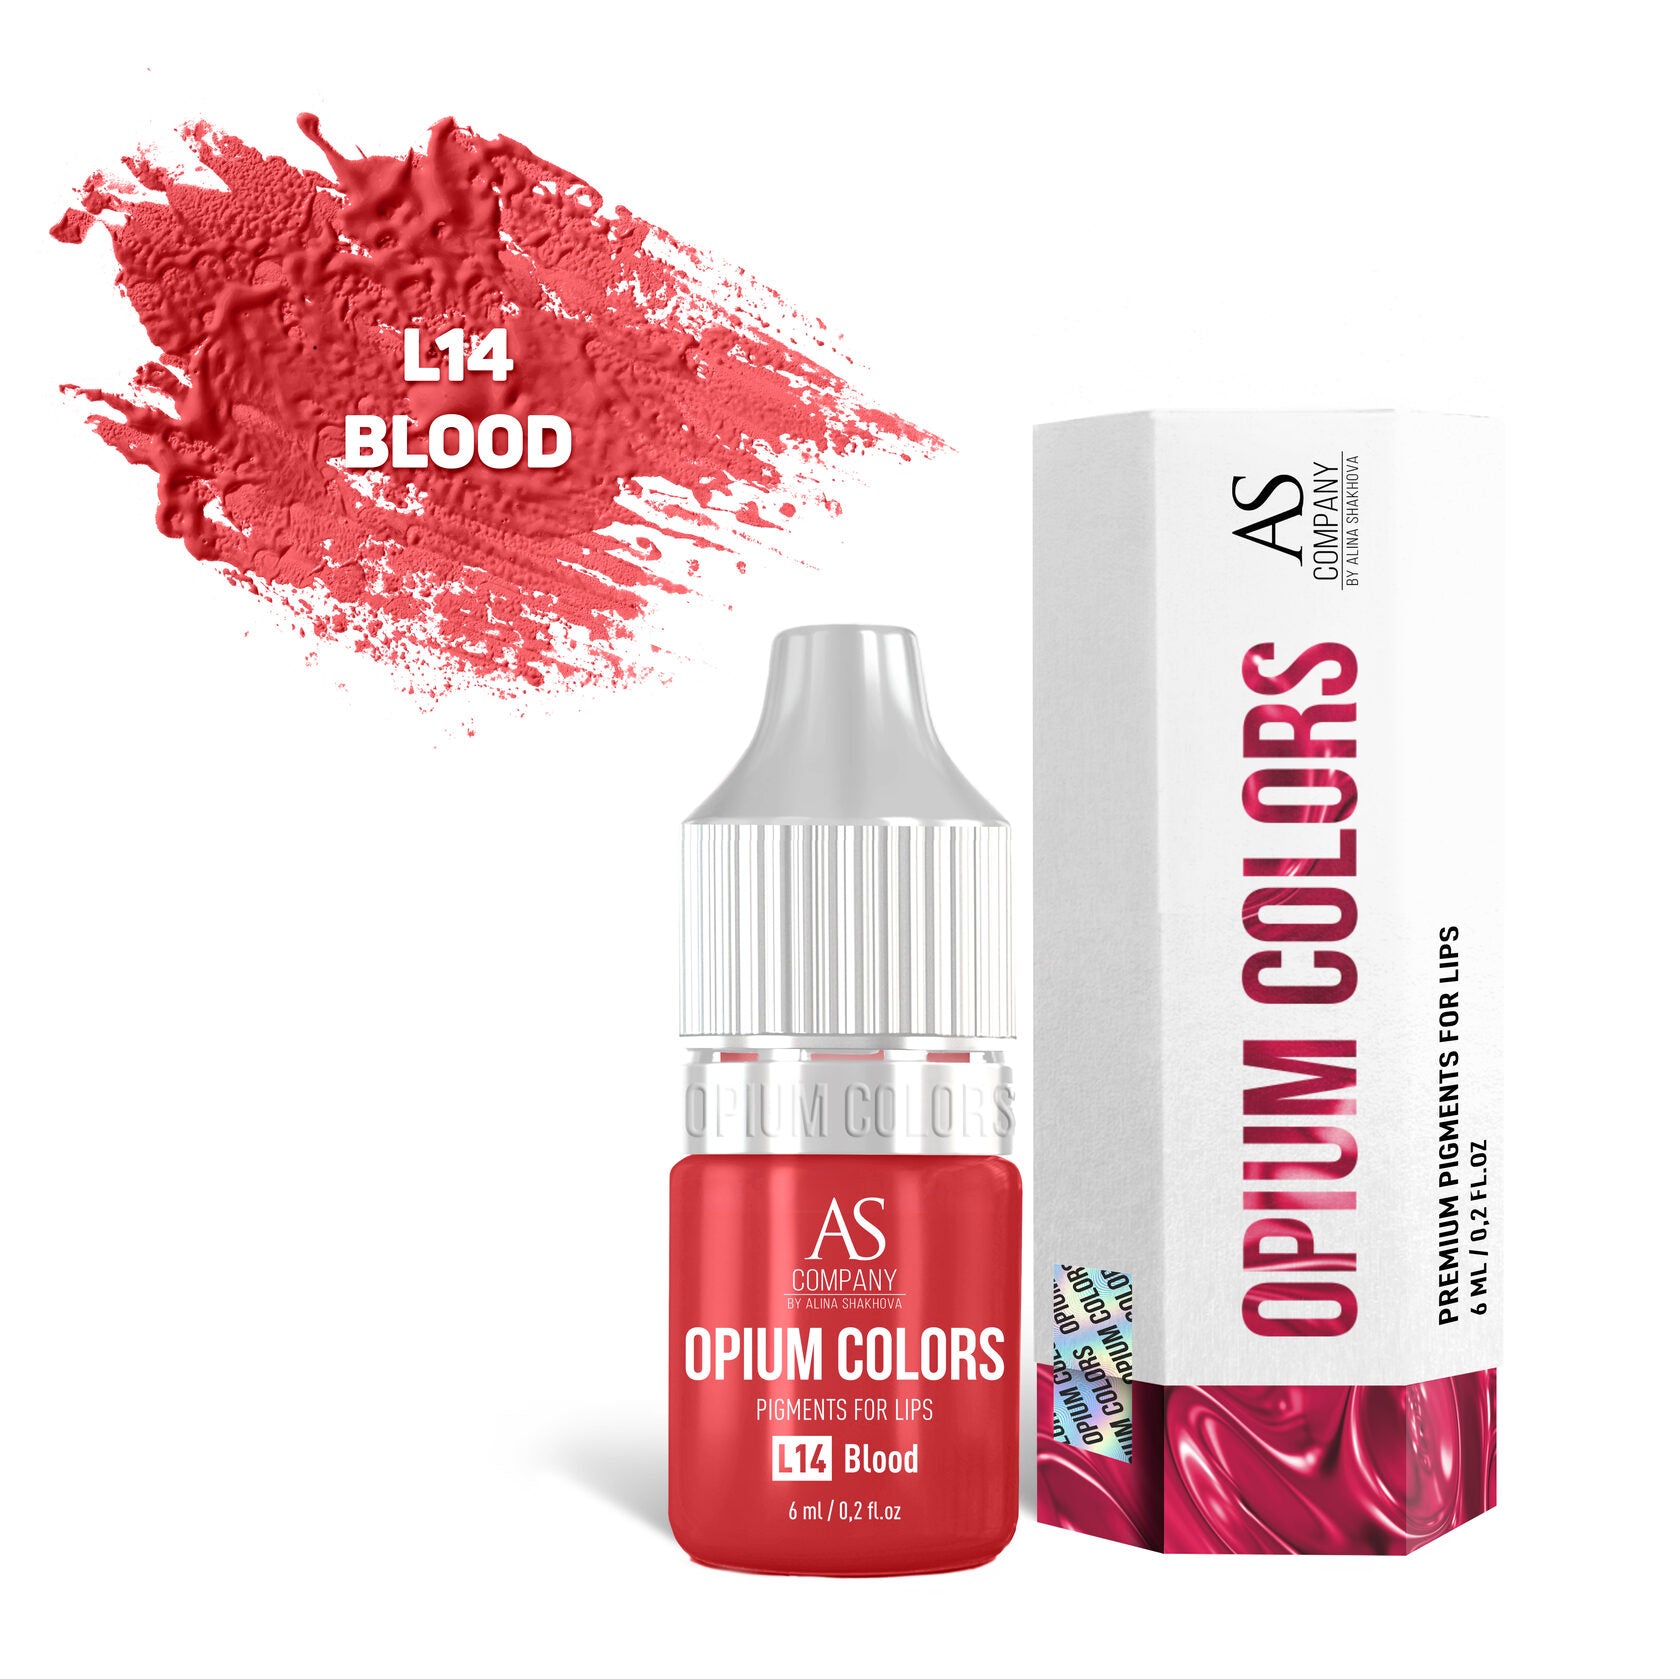 L14-BLOOD lip pigment OPIUM COLORS